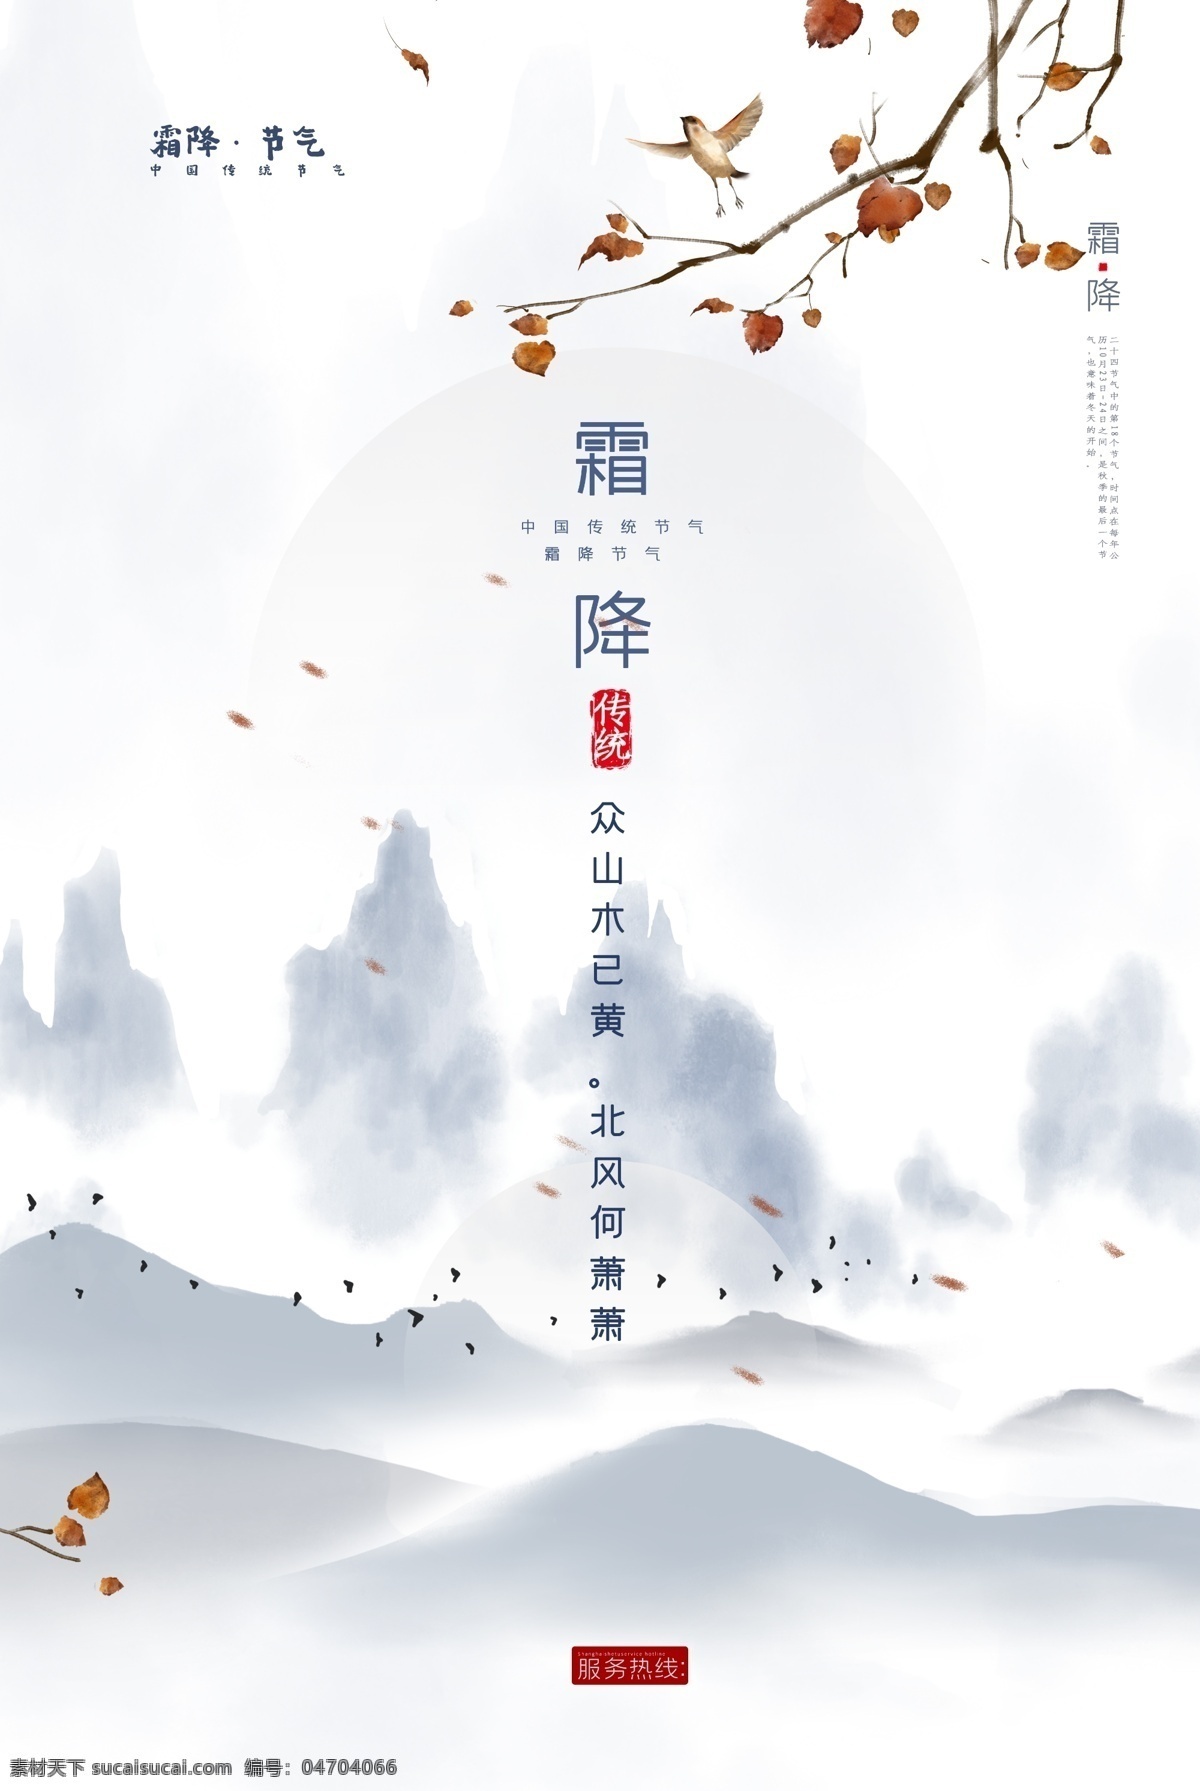 霜降 传统节日 活动 宣传海报 素材图片 传统 节日 宣传 海报